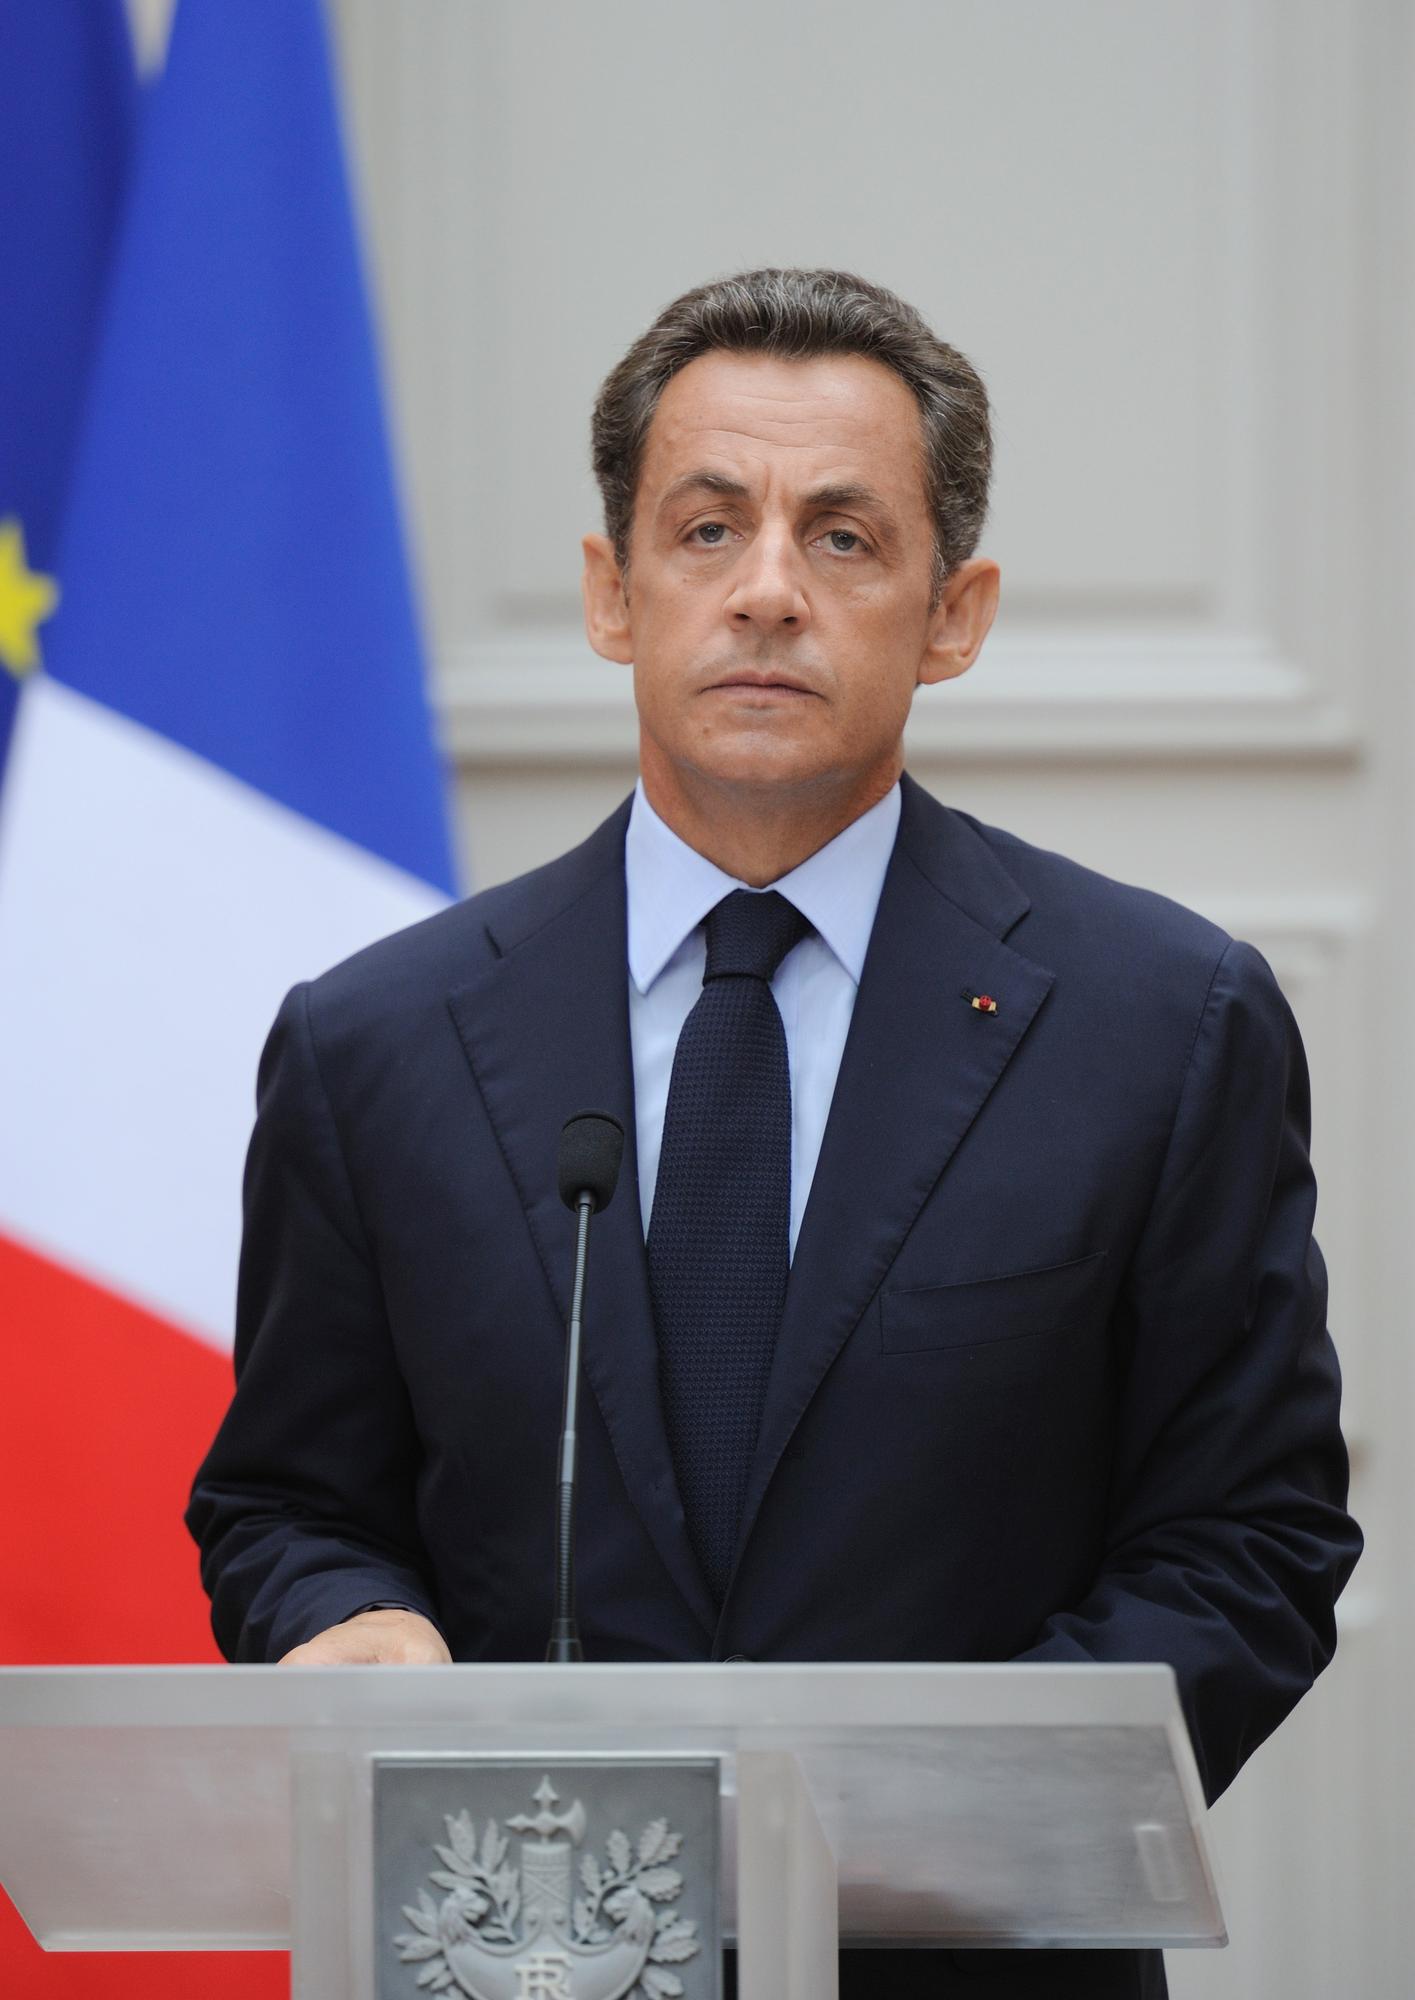 "Nous avons affaire à des gens qui n'ont aucun respect de la vie humaine", a souligné le président français.